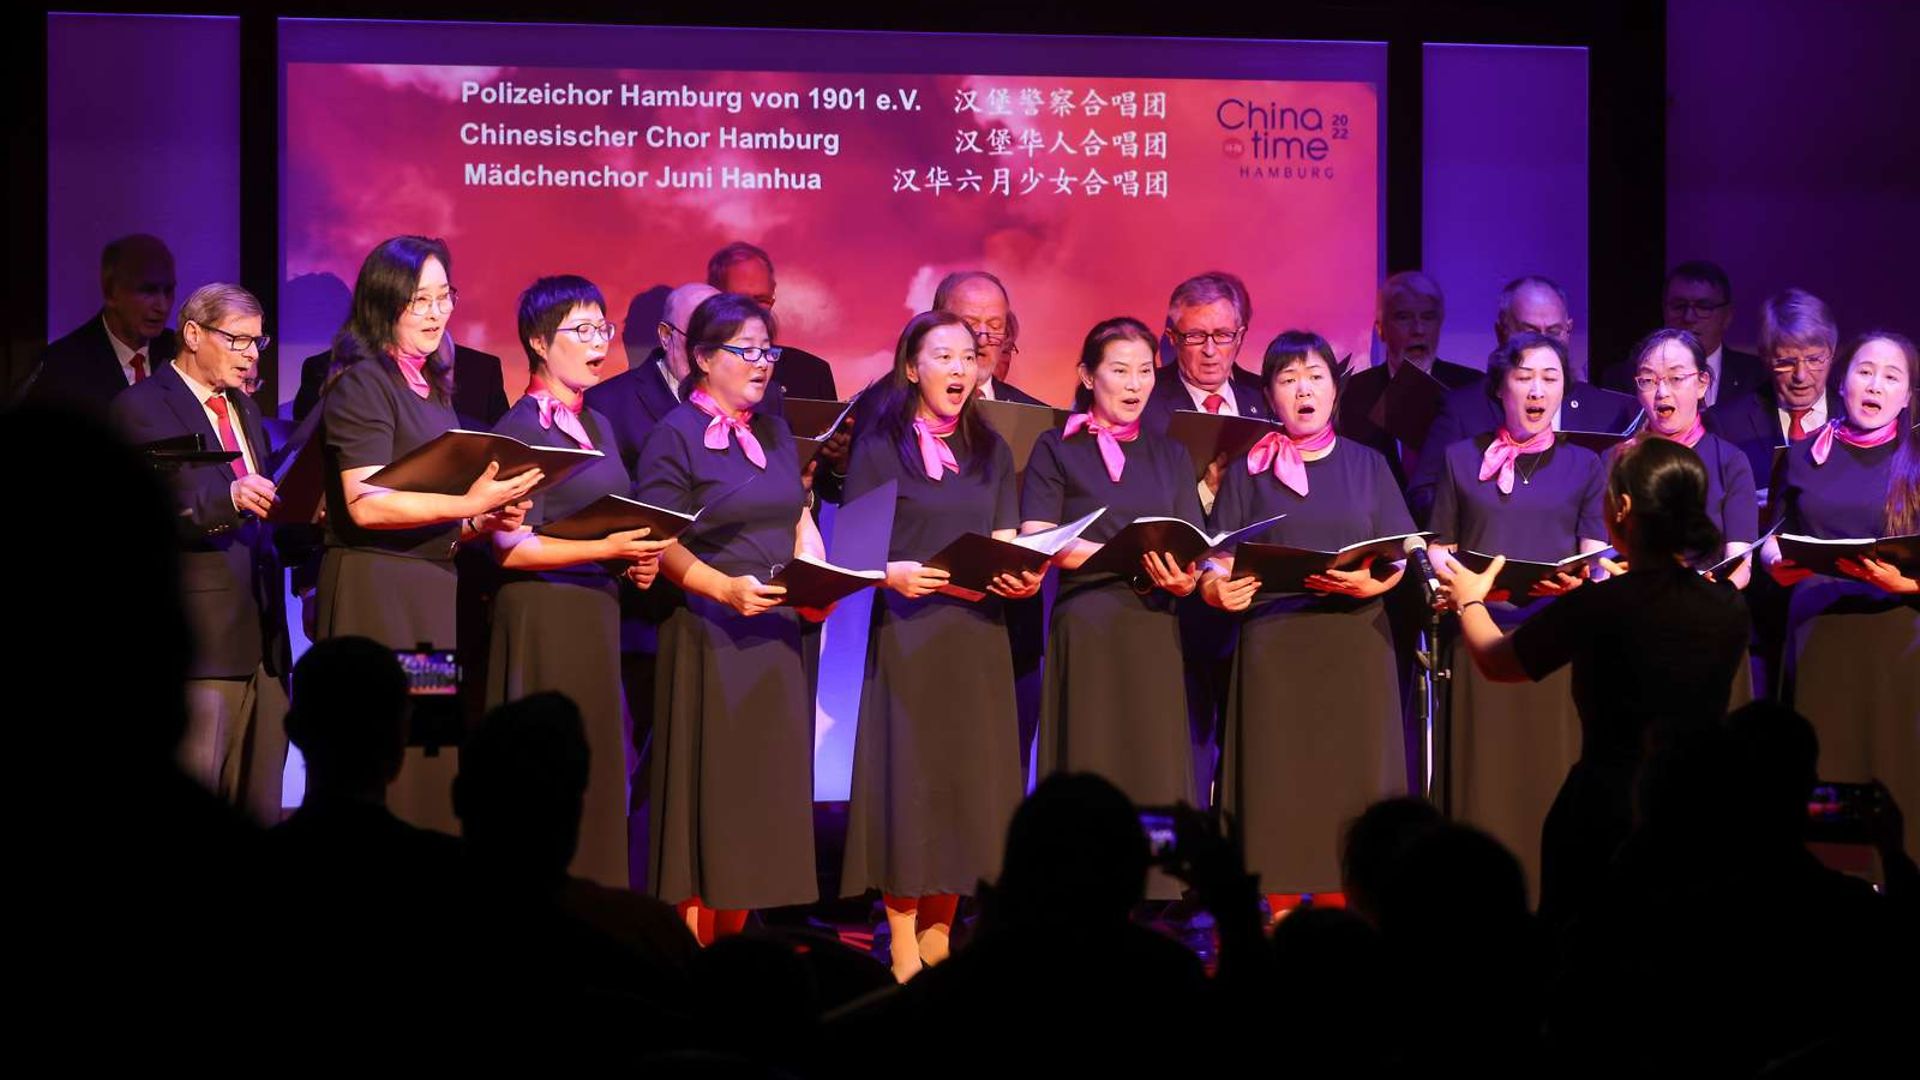 Polizeichor Hamburg, Chinesischer Chor Hamburg, Mädchenchor Juni Hanhua singen gemeinsam